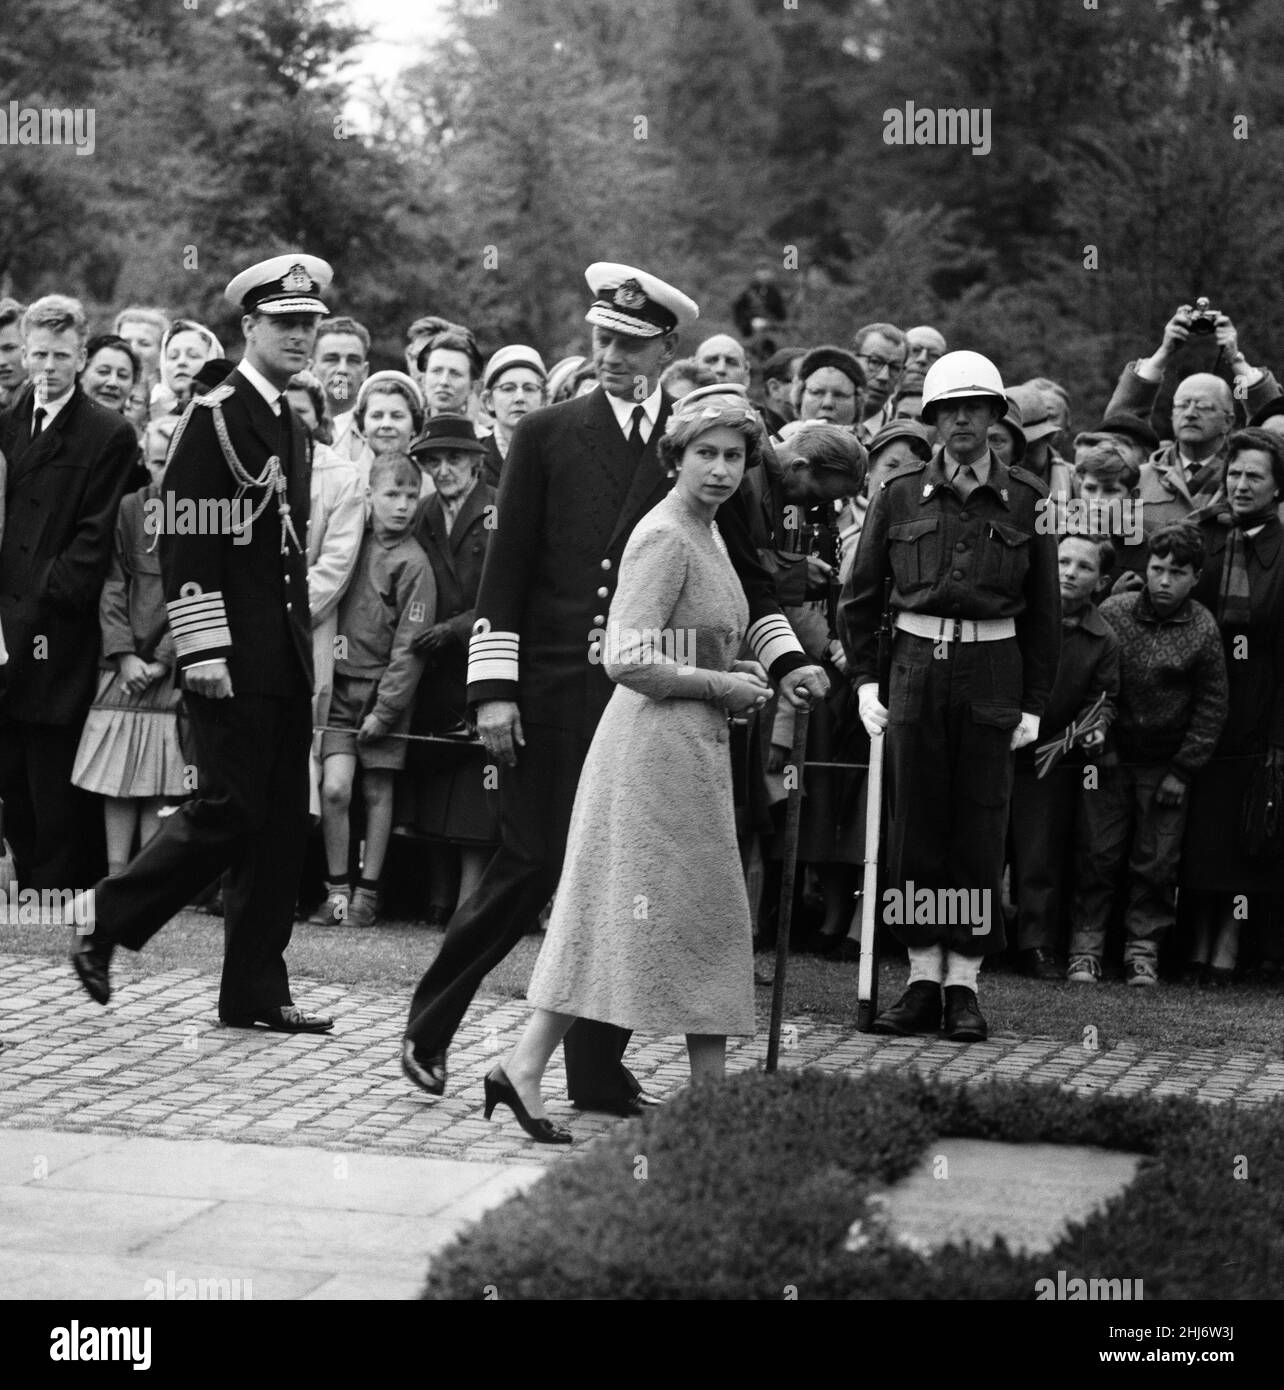 Visite de la reine Elizabeth II et du prince Philip, duc d'Édimbourg au Danemark.La reine Elizabeth II et le prince Philip photographiés avec le roi Frederik IX du Danemark lors d'une visite du cimetière du souvenir au mouvement de résistance.23rd mai 1957. Banque D'Images